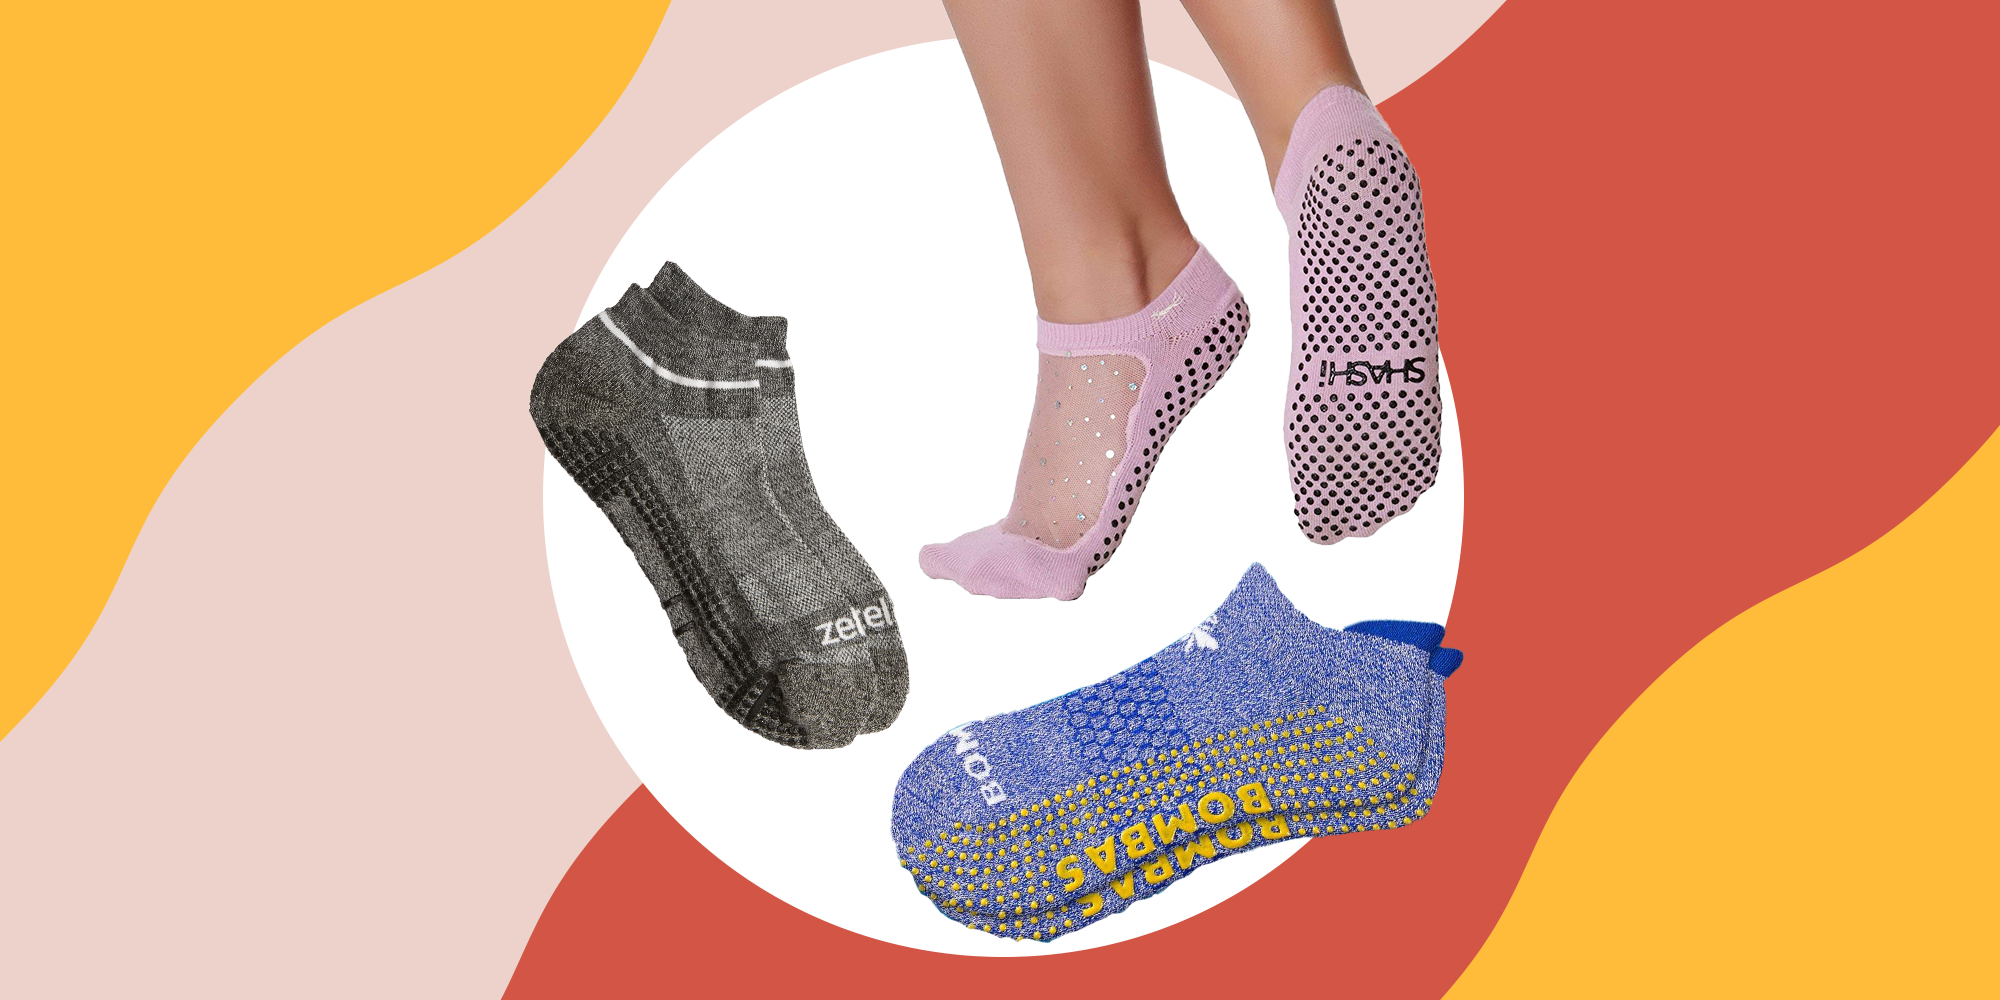 1pair women cotton yoga socks barre dancing socks non slip 10 colors barreBIUS 